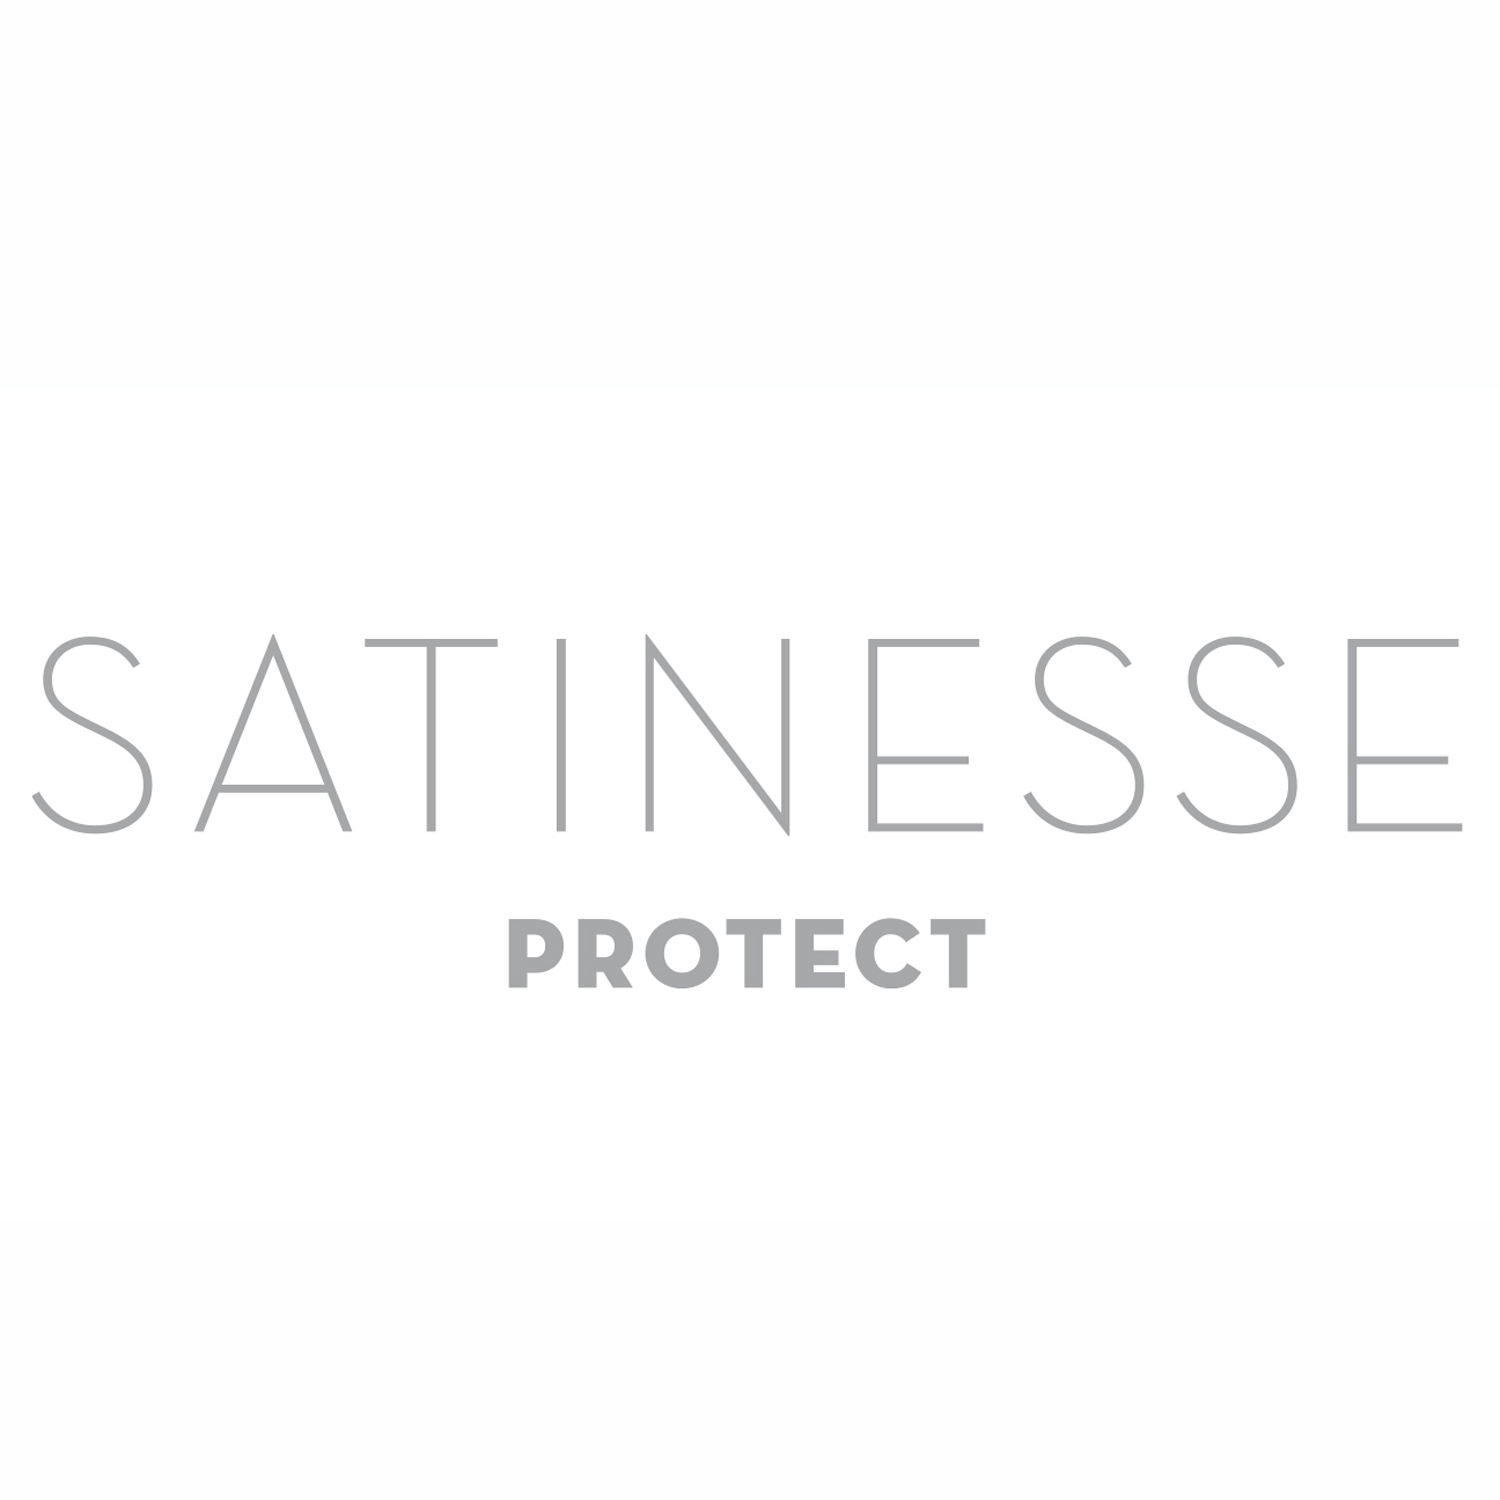 FORMESSE Matratzenschoner Satinesse Protect weiß 140x200cm